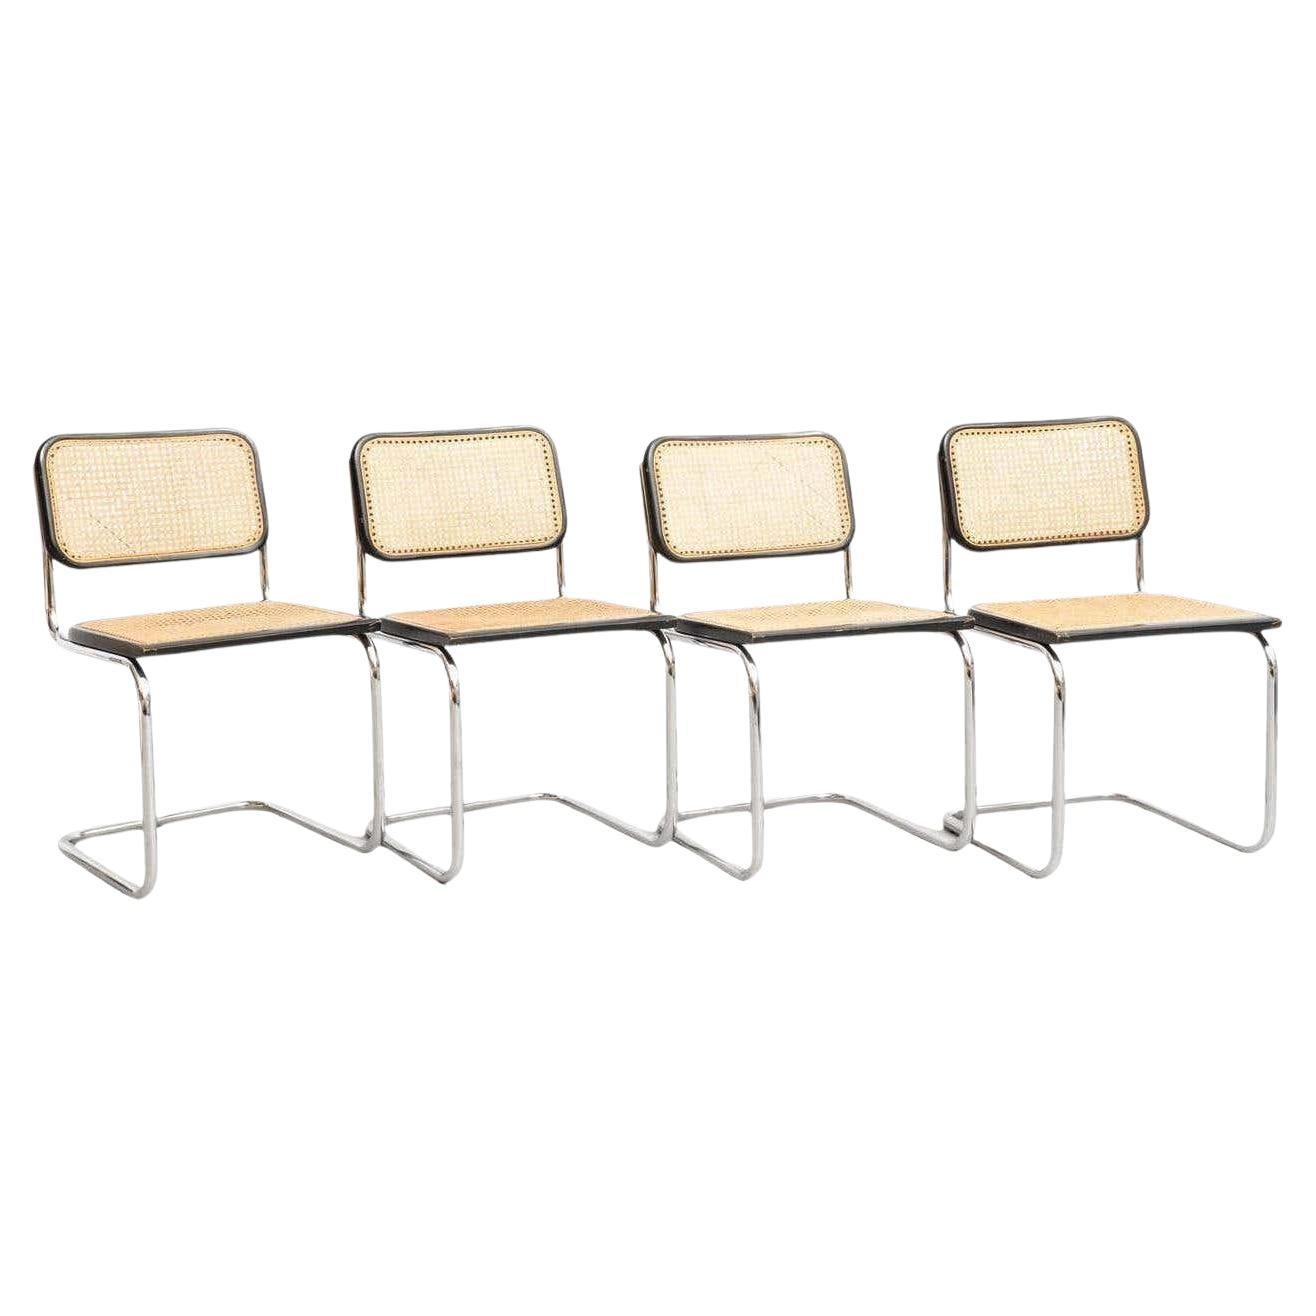 Ensemble de 4 chaises Cesca modernes Marcel Breuer en métal et bois du milieu du siècle dernier, vers 1960